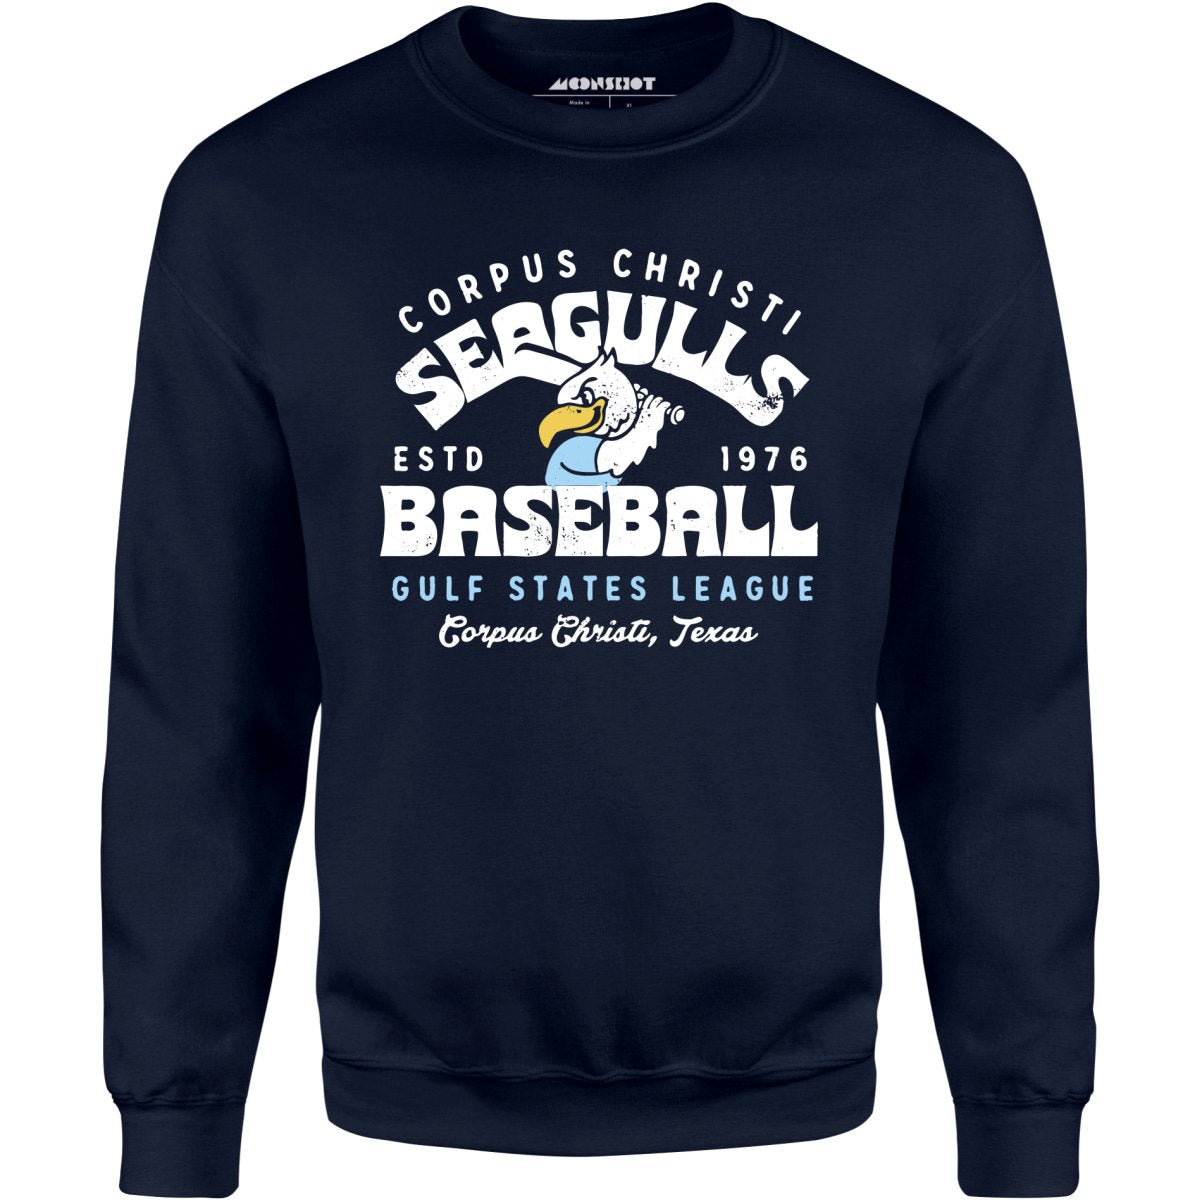 Corpus Christi Seagulls - Texas - Vintage Defunct Baseball Teams - Unisex Sweatshirt